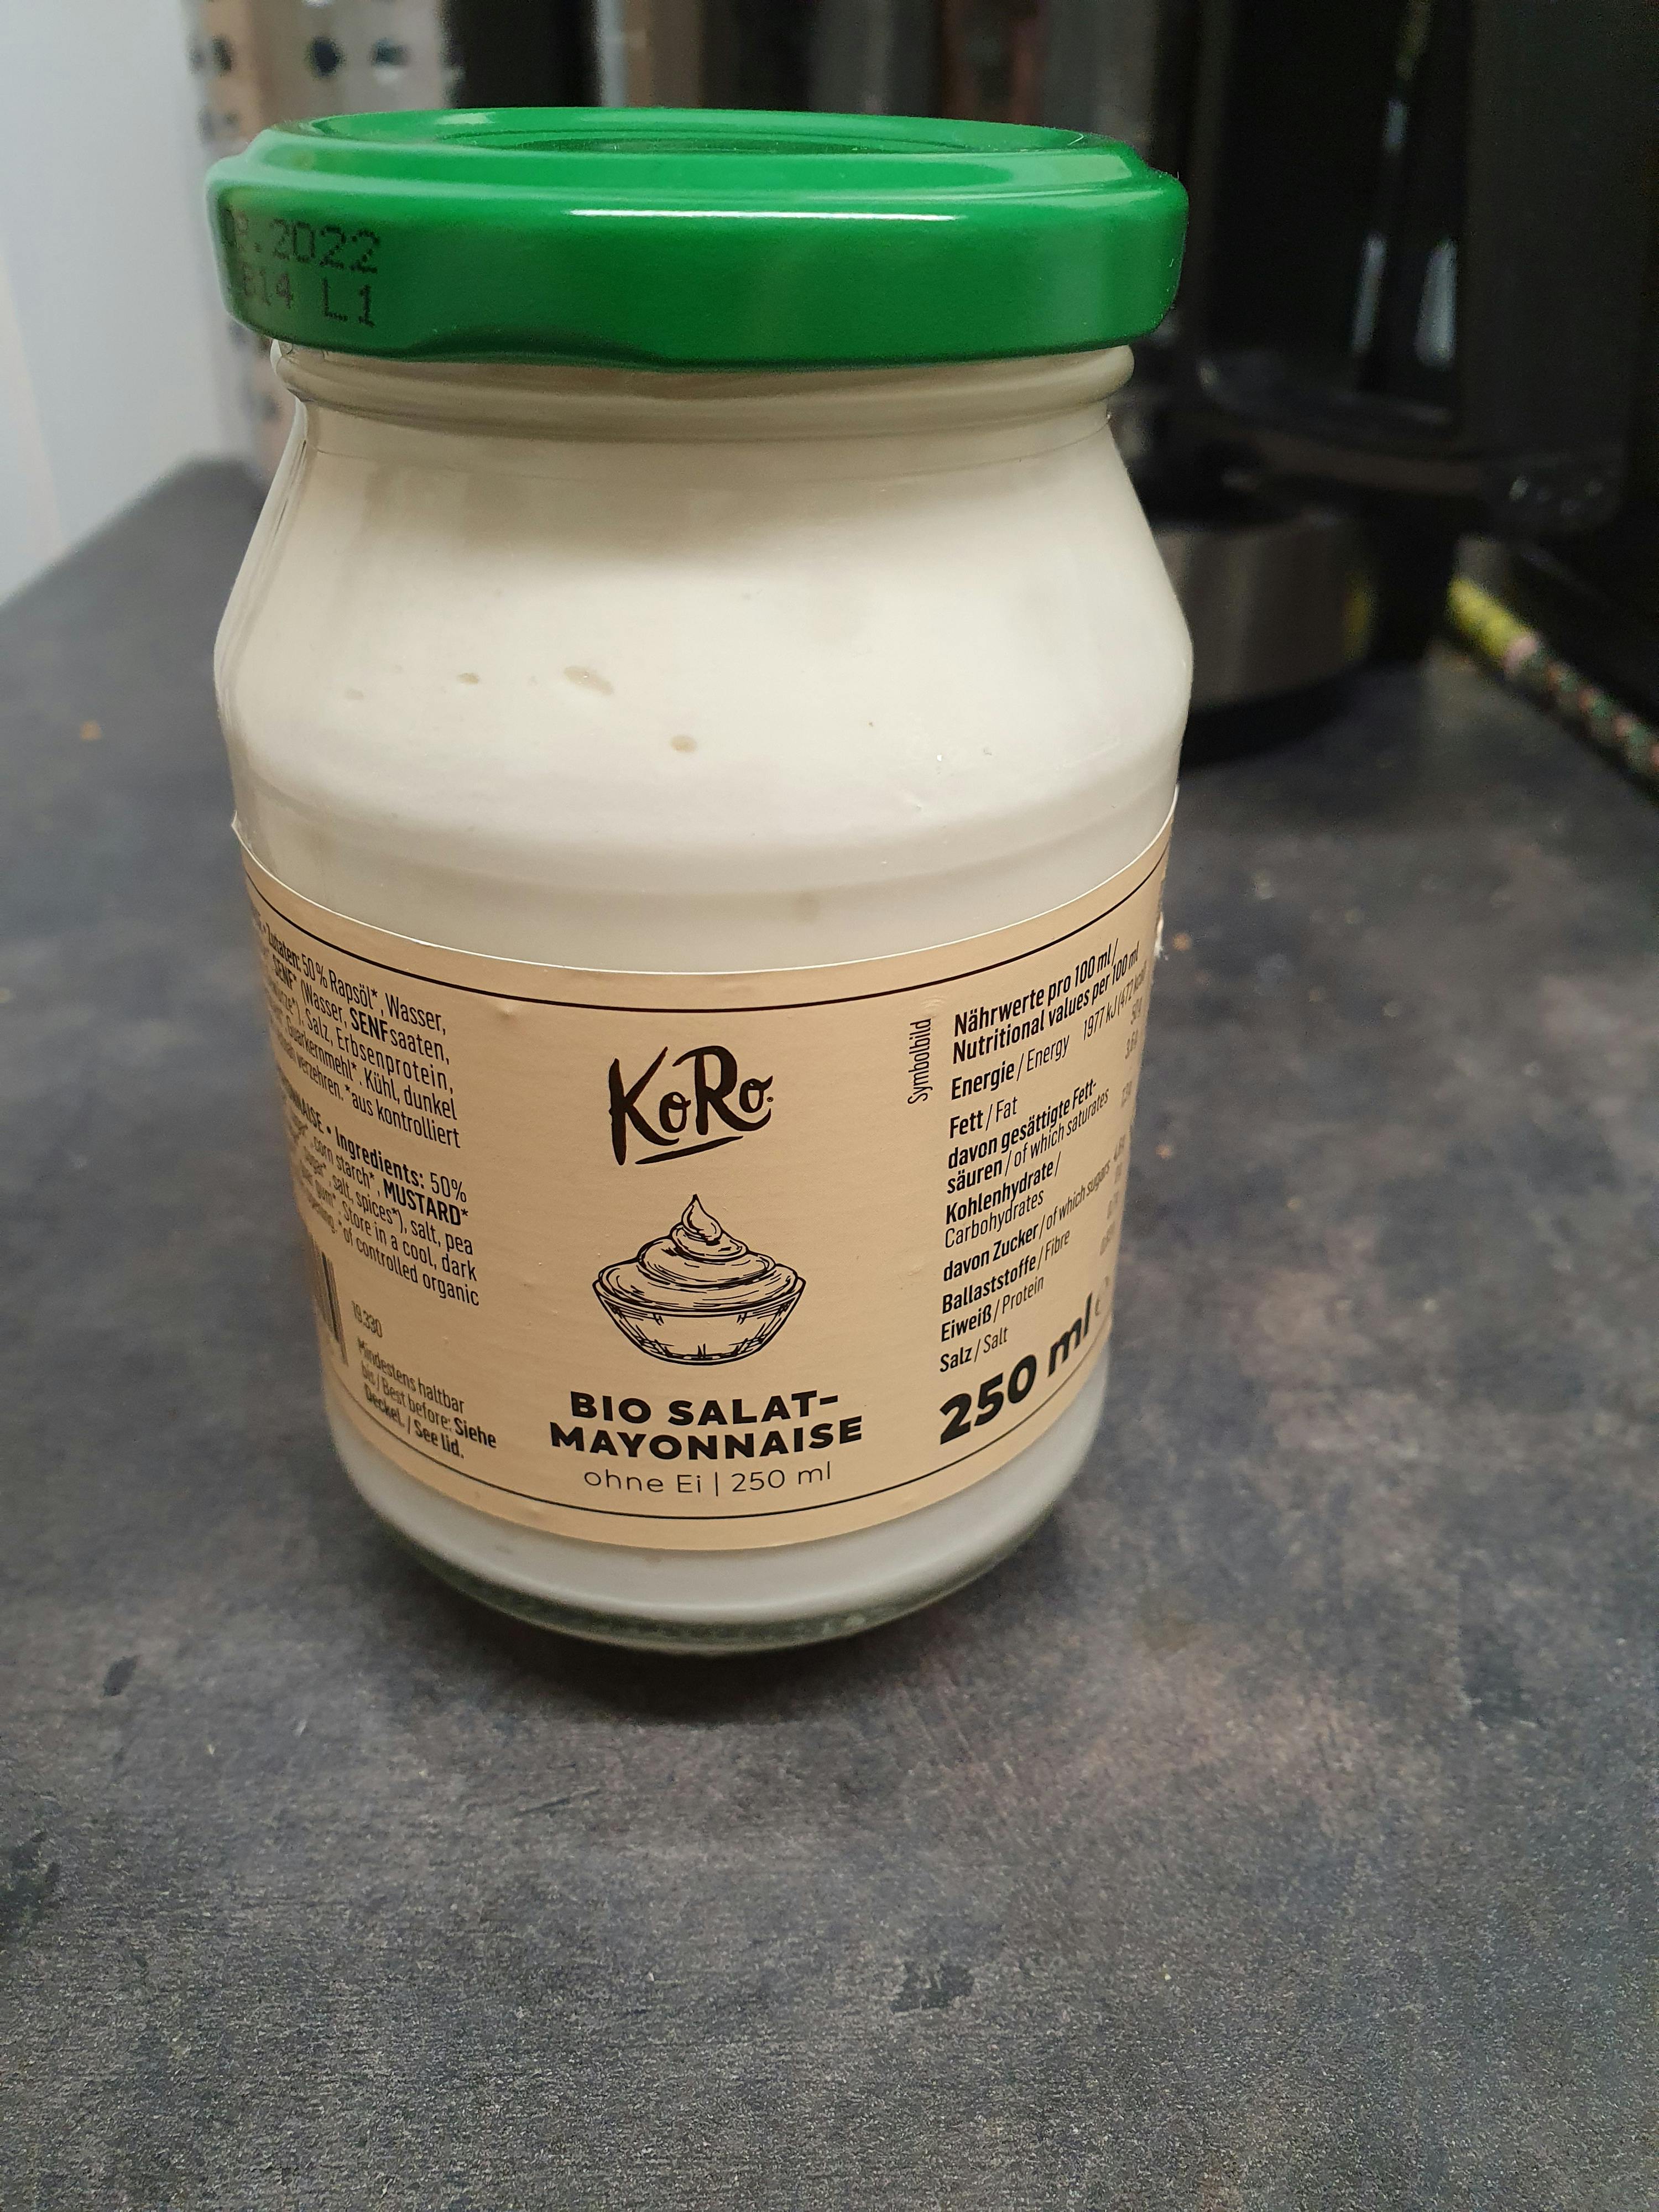 Biologische veganistische mayonaise 250 ml kopen